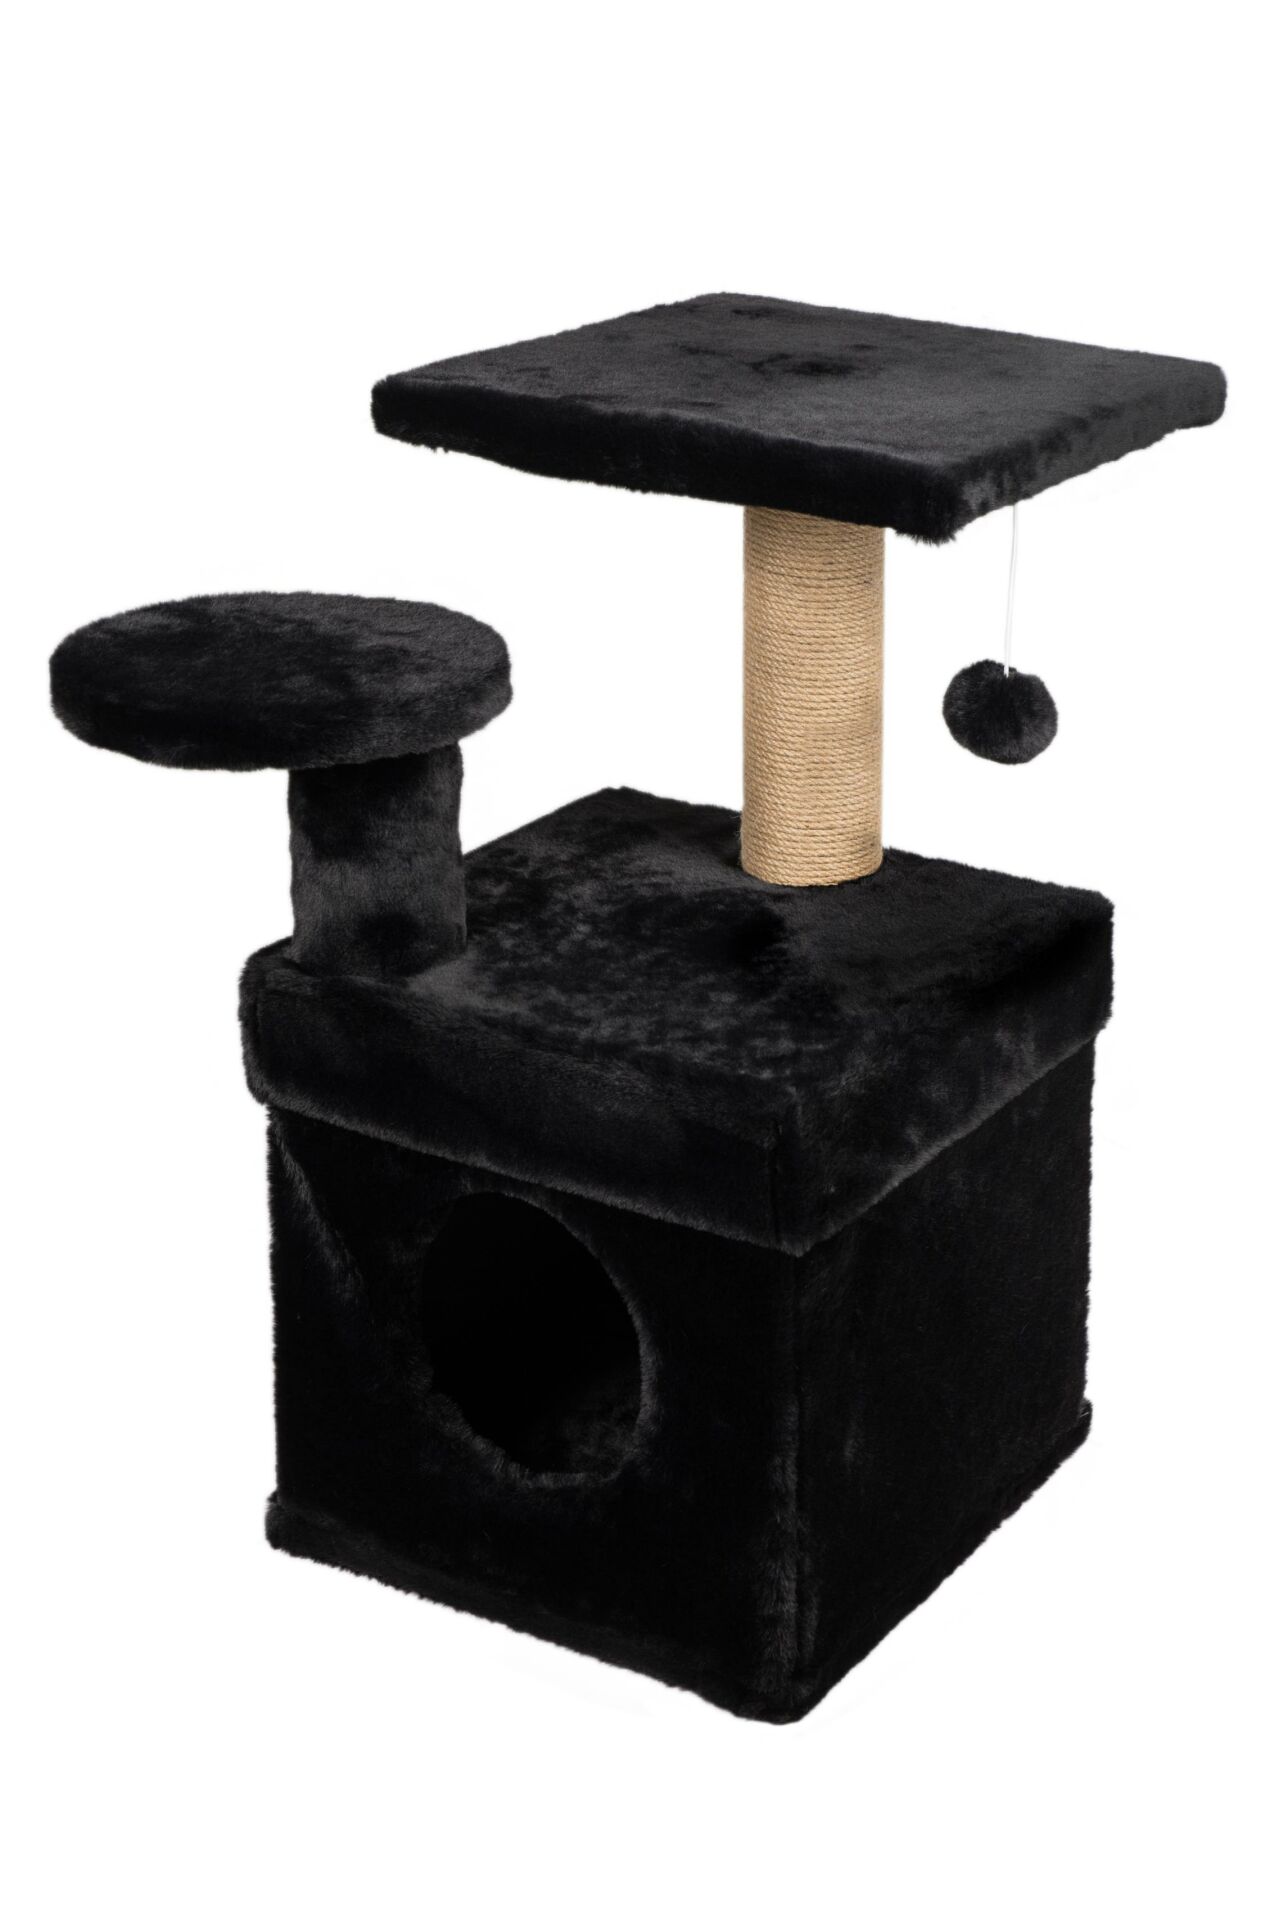 Dubex 65x51x72 cm Kedi Oyun Evi ve Tırmalama Platformu Siyah